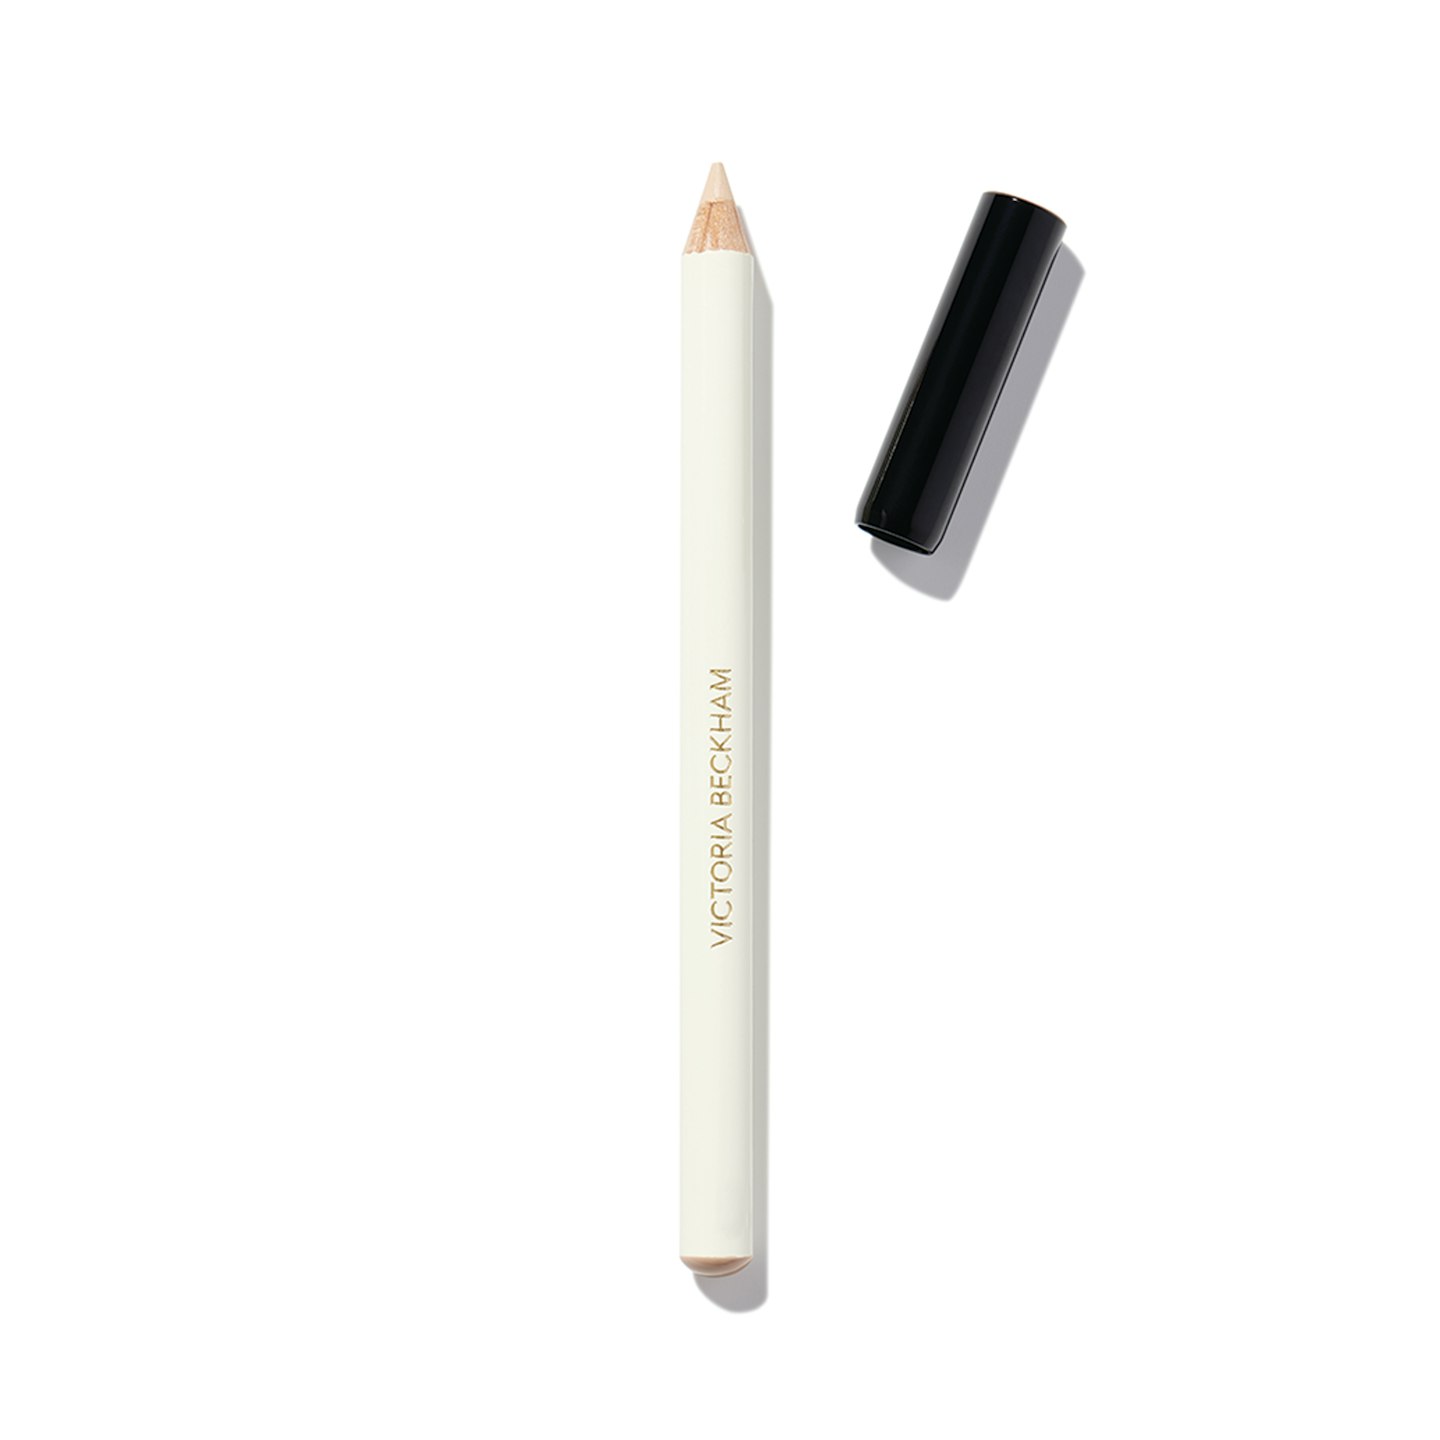 Victoria Beckham Beauty Instant Brightening Waterline Pencil, £22